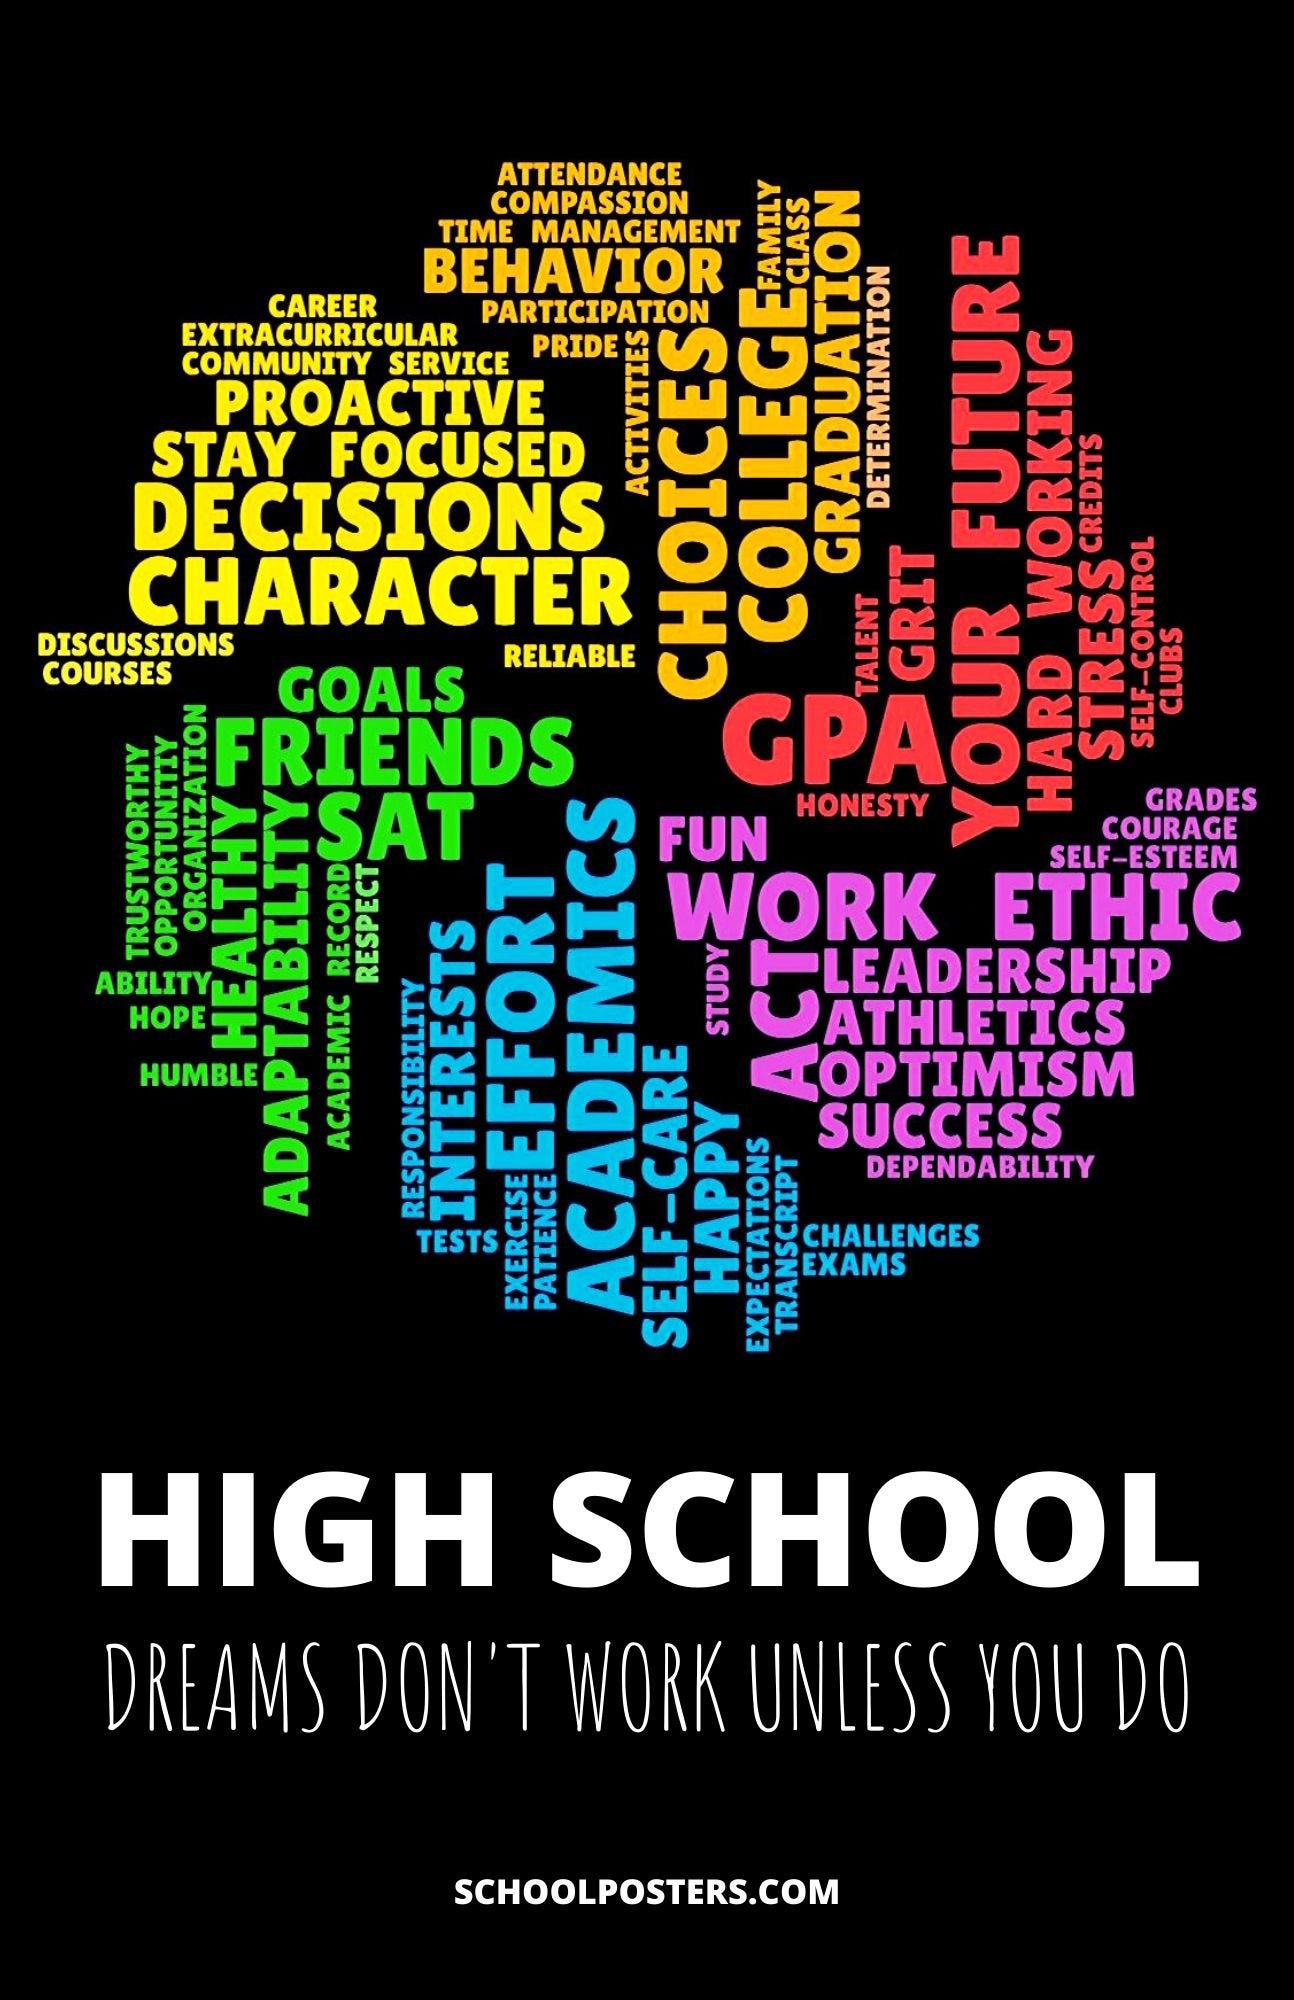 High School Dreams Poster